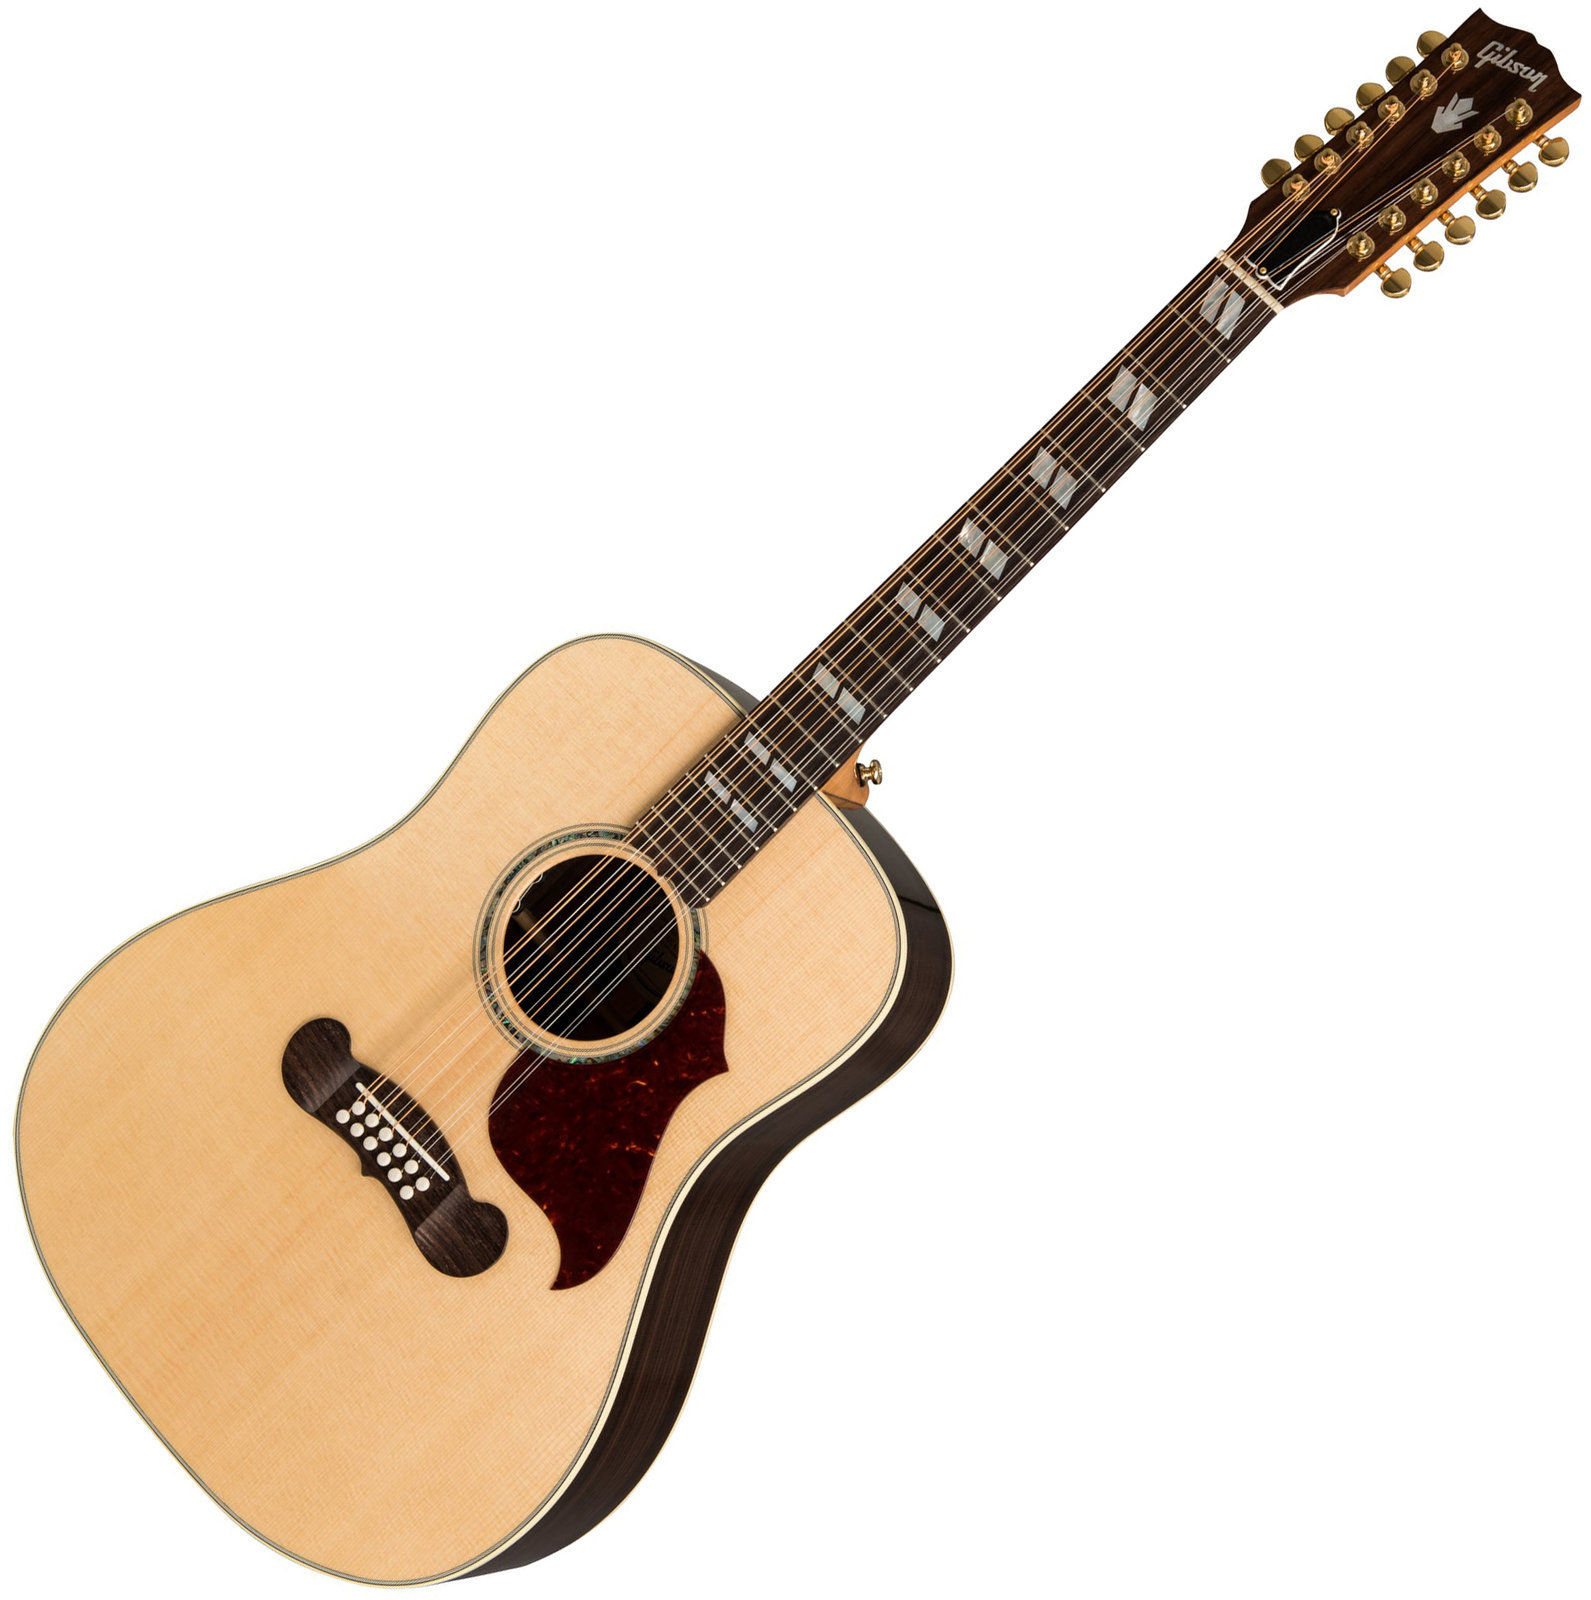 12χορδη Ηλεκτροακουστική Κιθάρα Gibson Songwriter 12 2019 Antique Natural